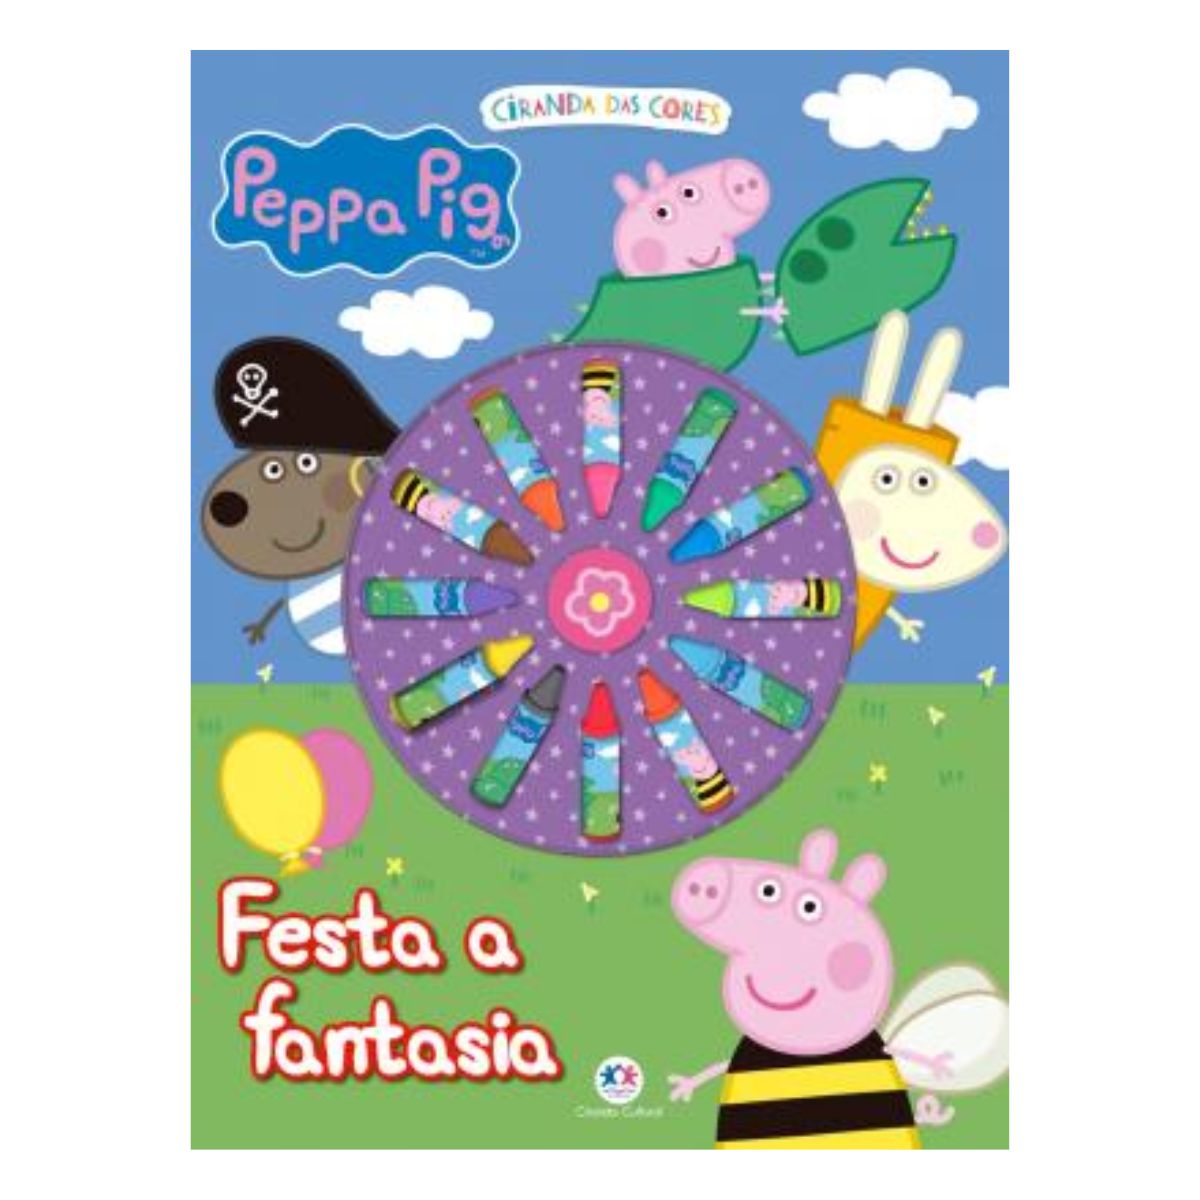 Desenho para colorir Peppa Pig : Família 12